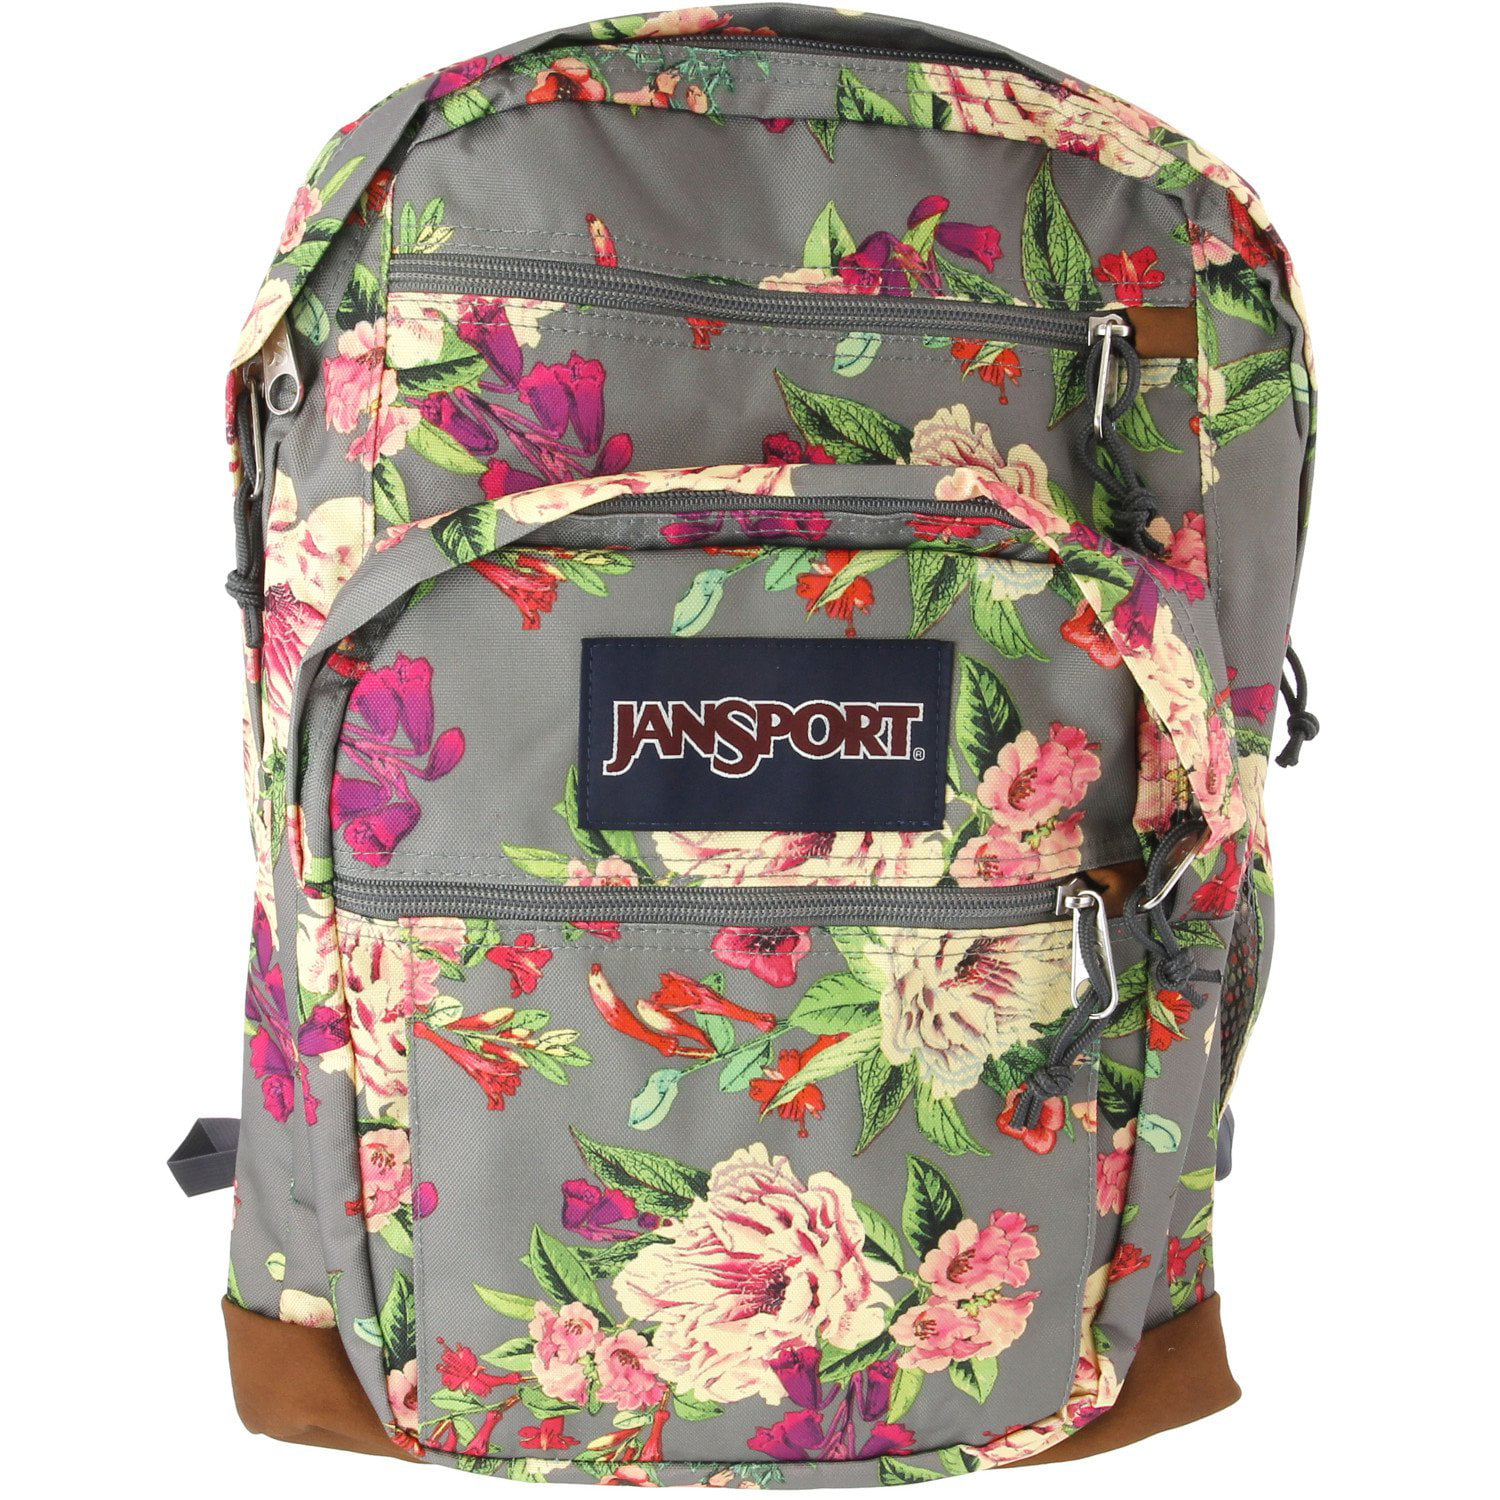 jansport backpack sale walmart